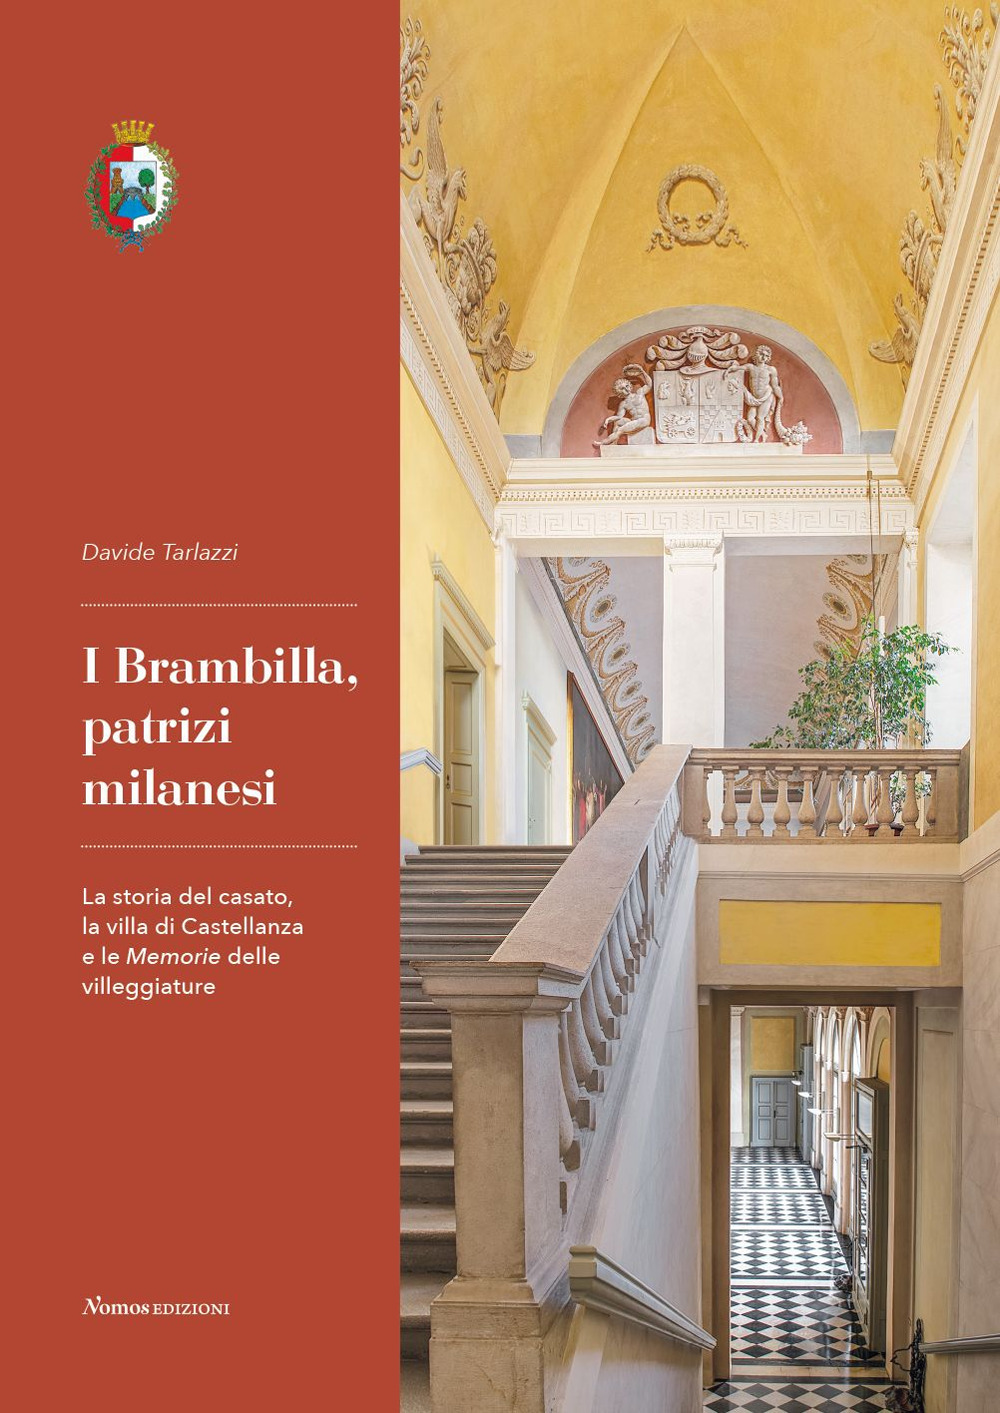 I Brambilla, patrizi milanesi. La storia del casato, la villa di Castellanza e le Memorie delle villeggiature